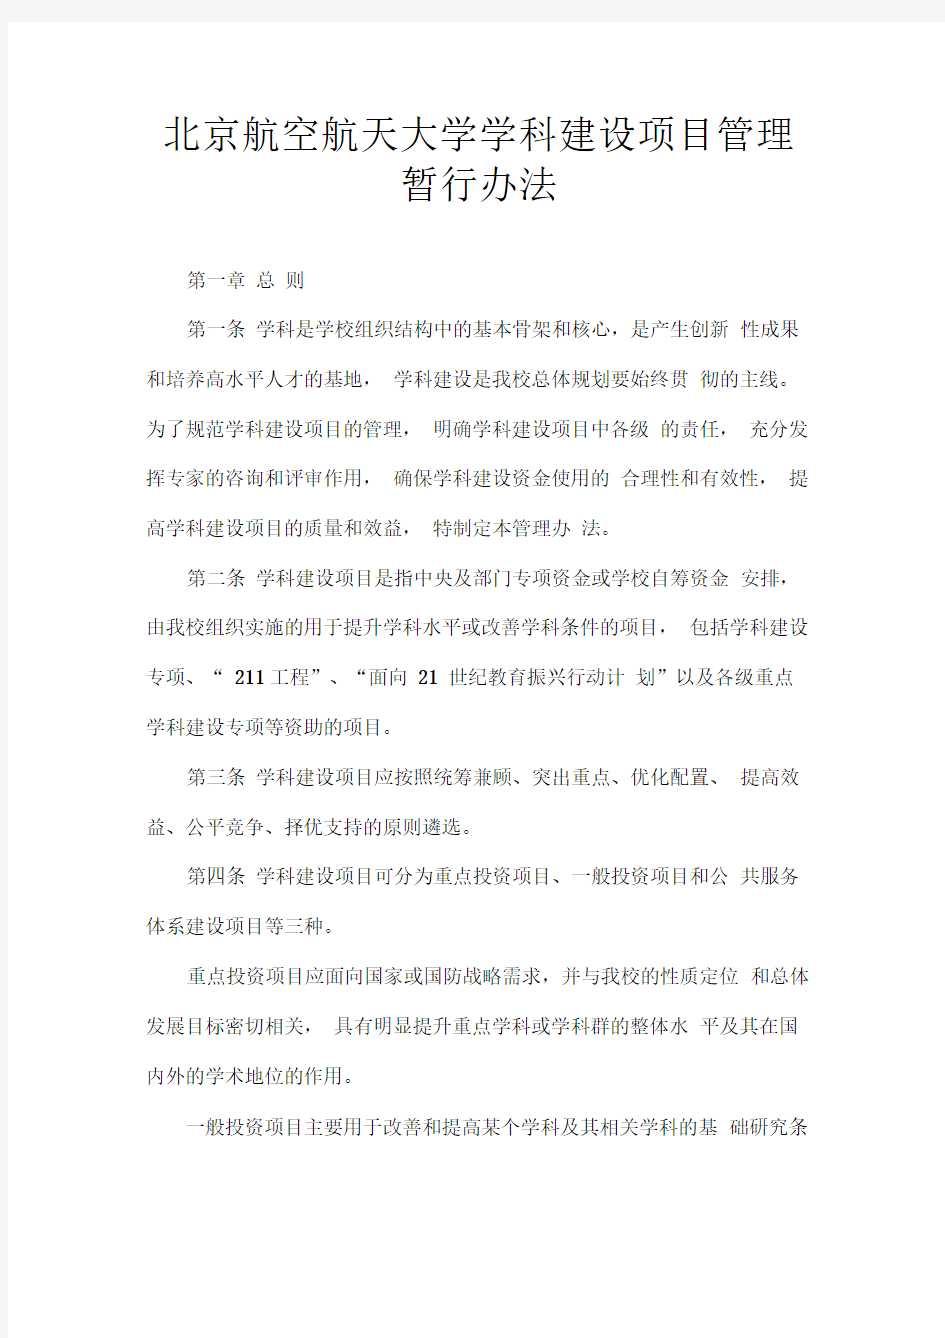 北京航空航天大学学科建设项目管理暂行办法.